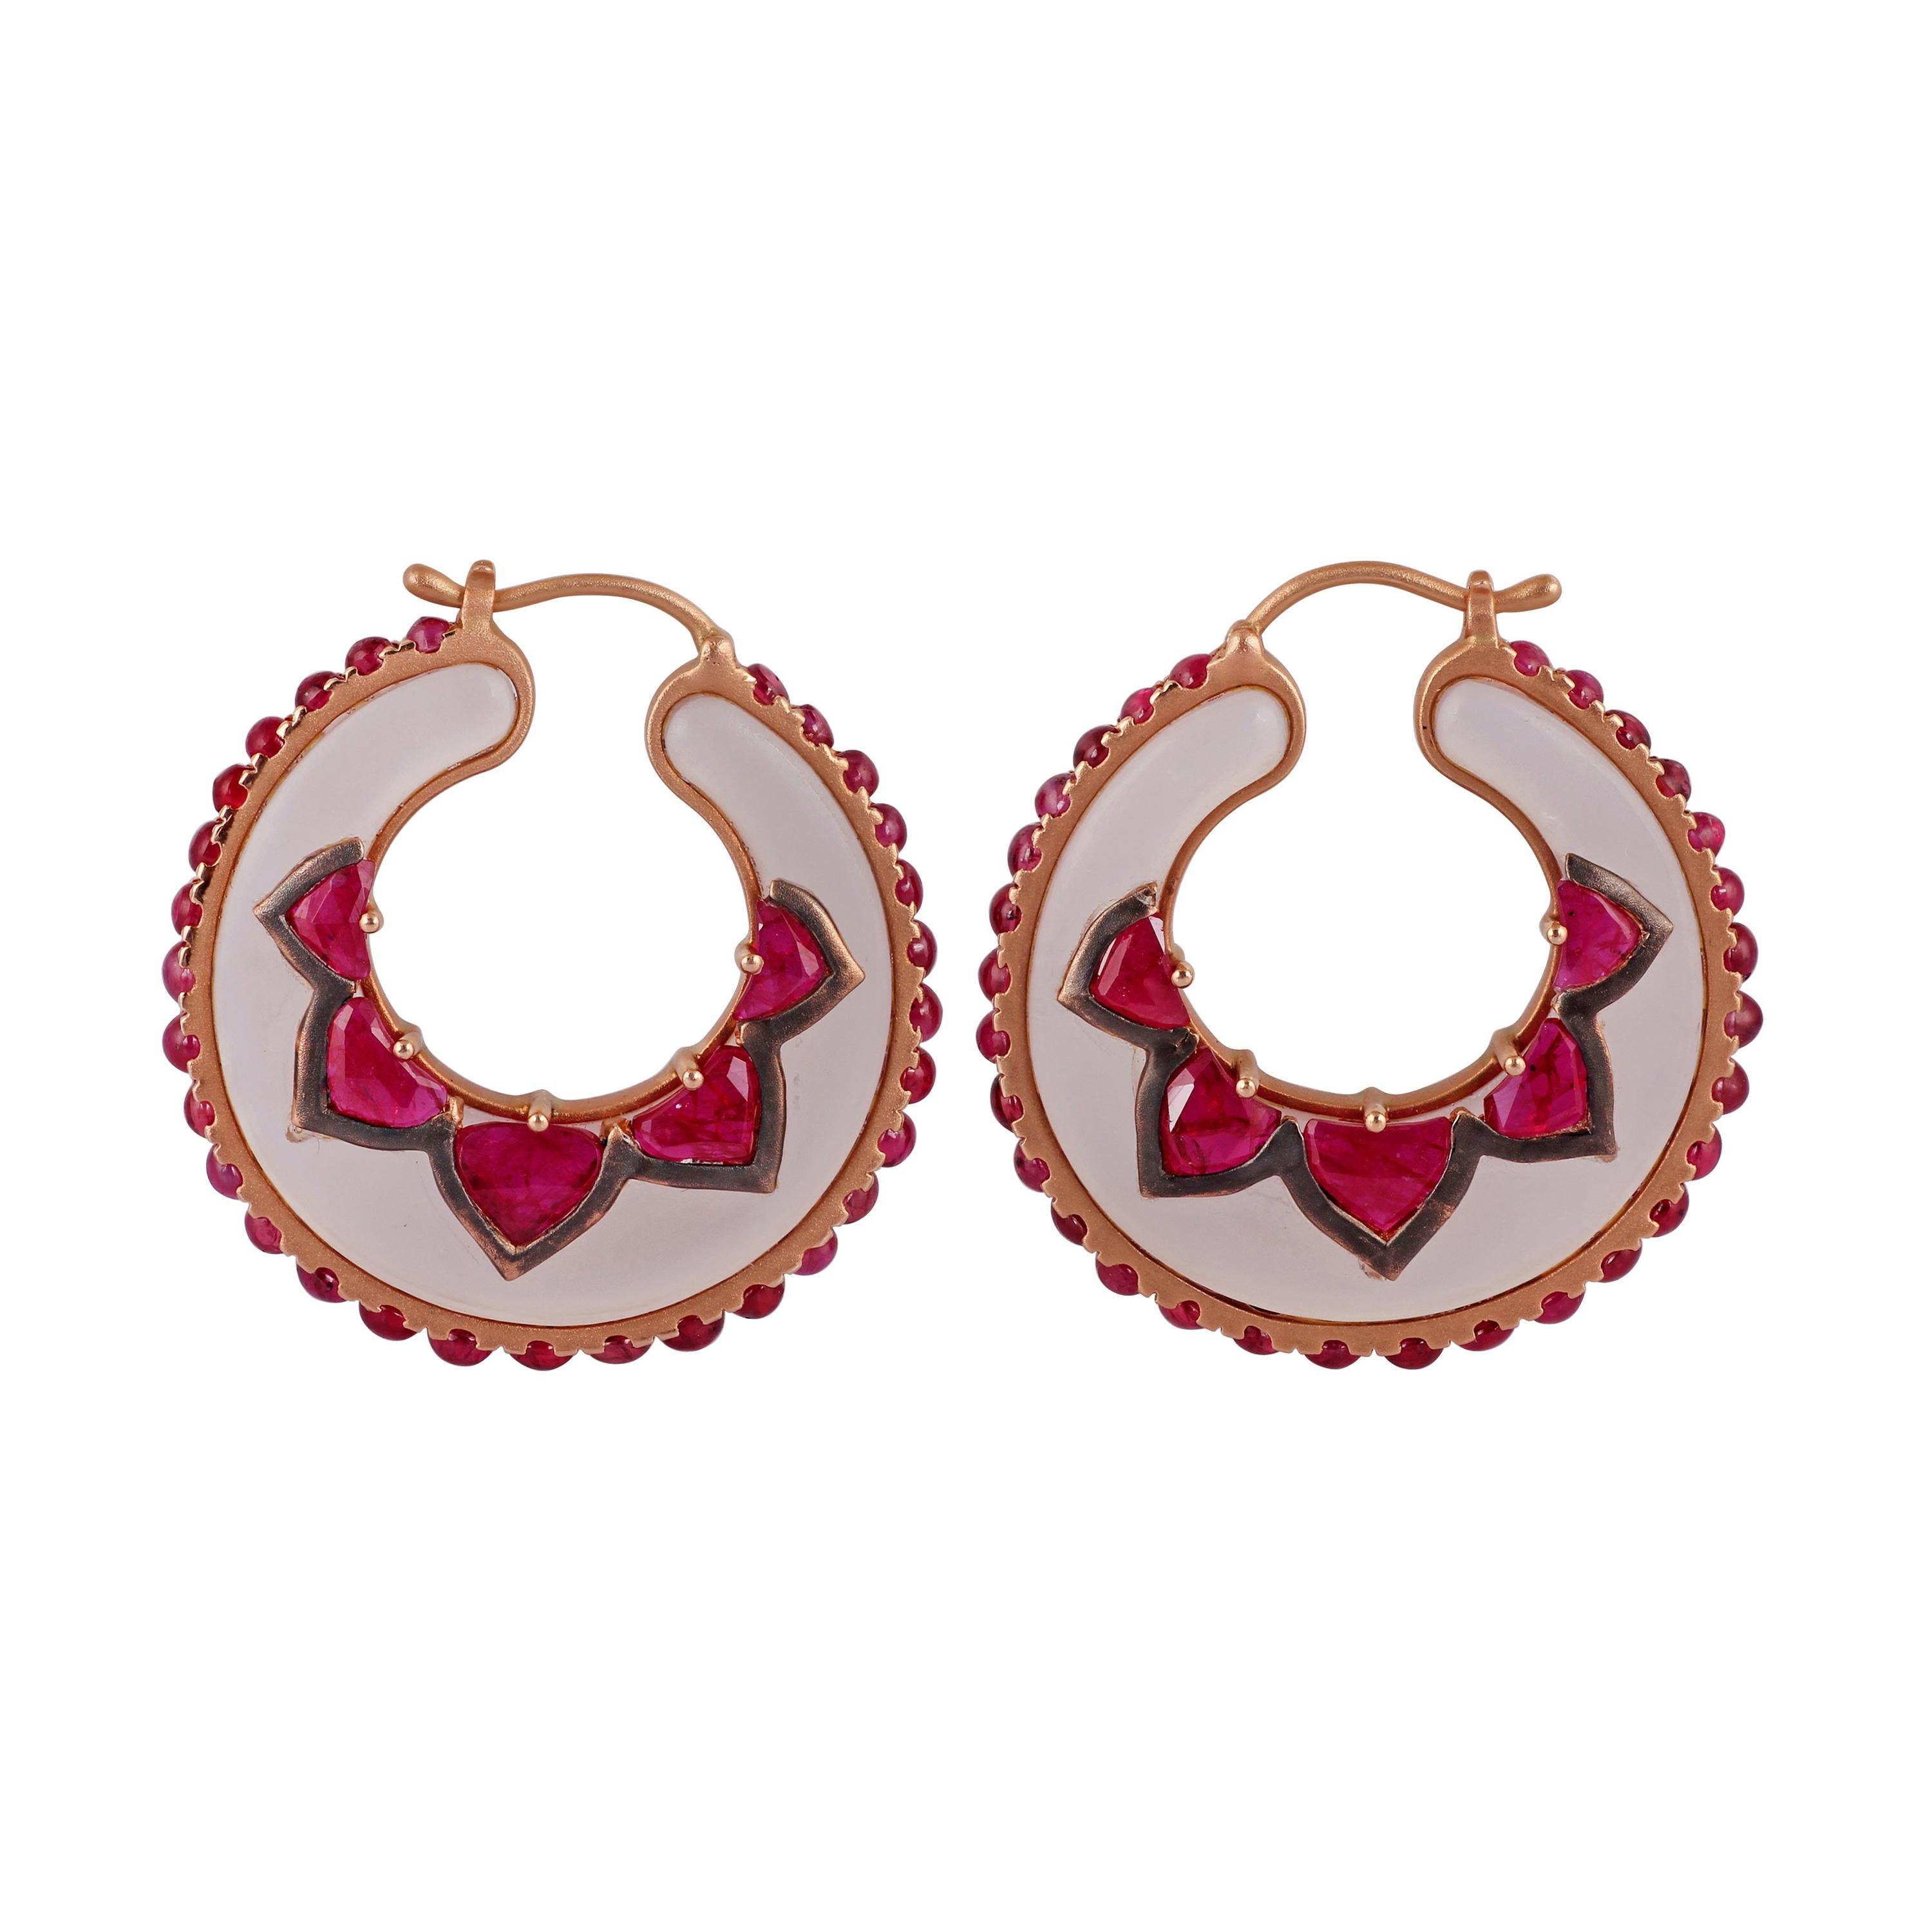 Rose Quartz & Ruby Earrings Studded in 18k Rose Gold For Sale